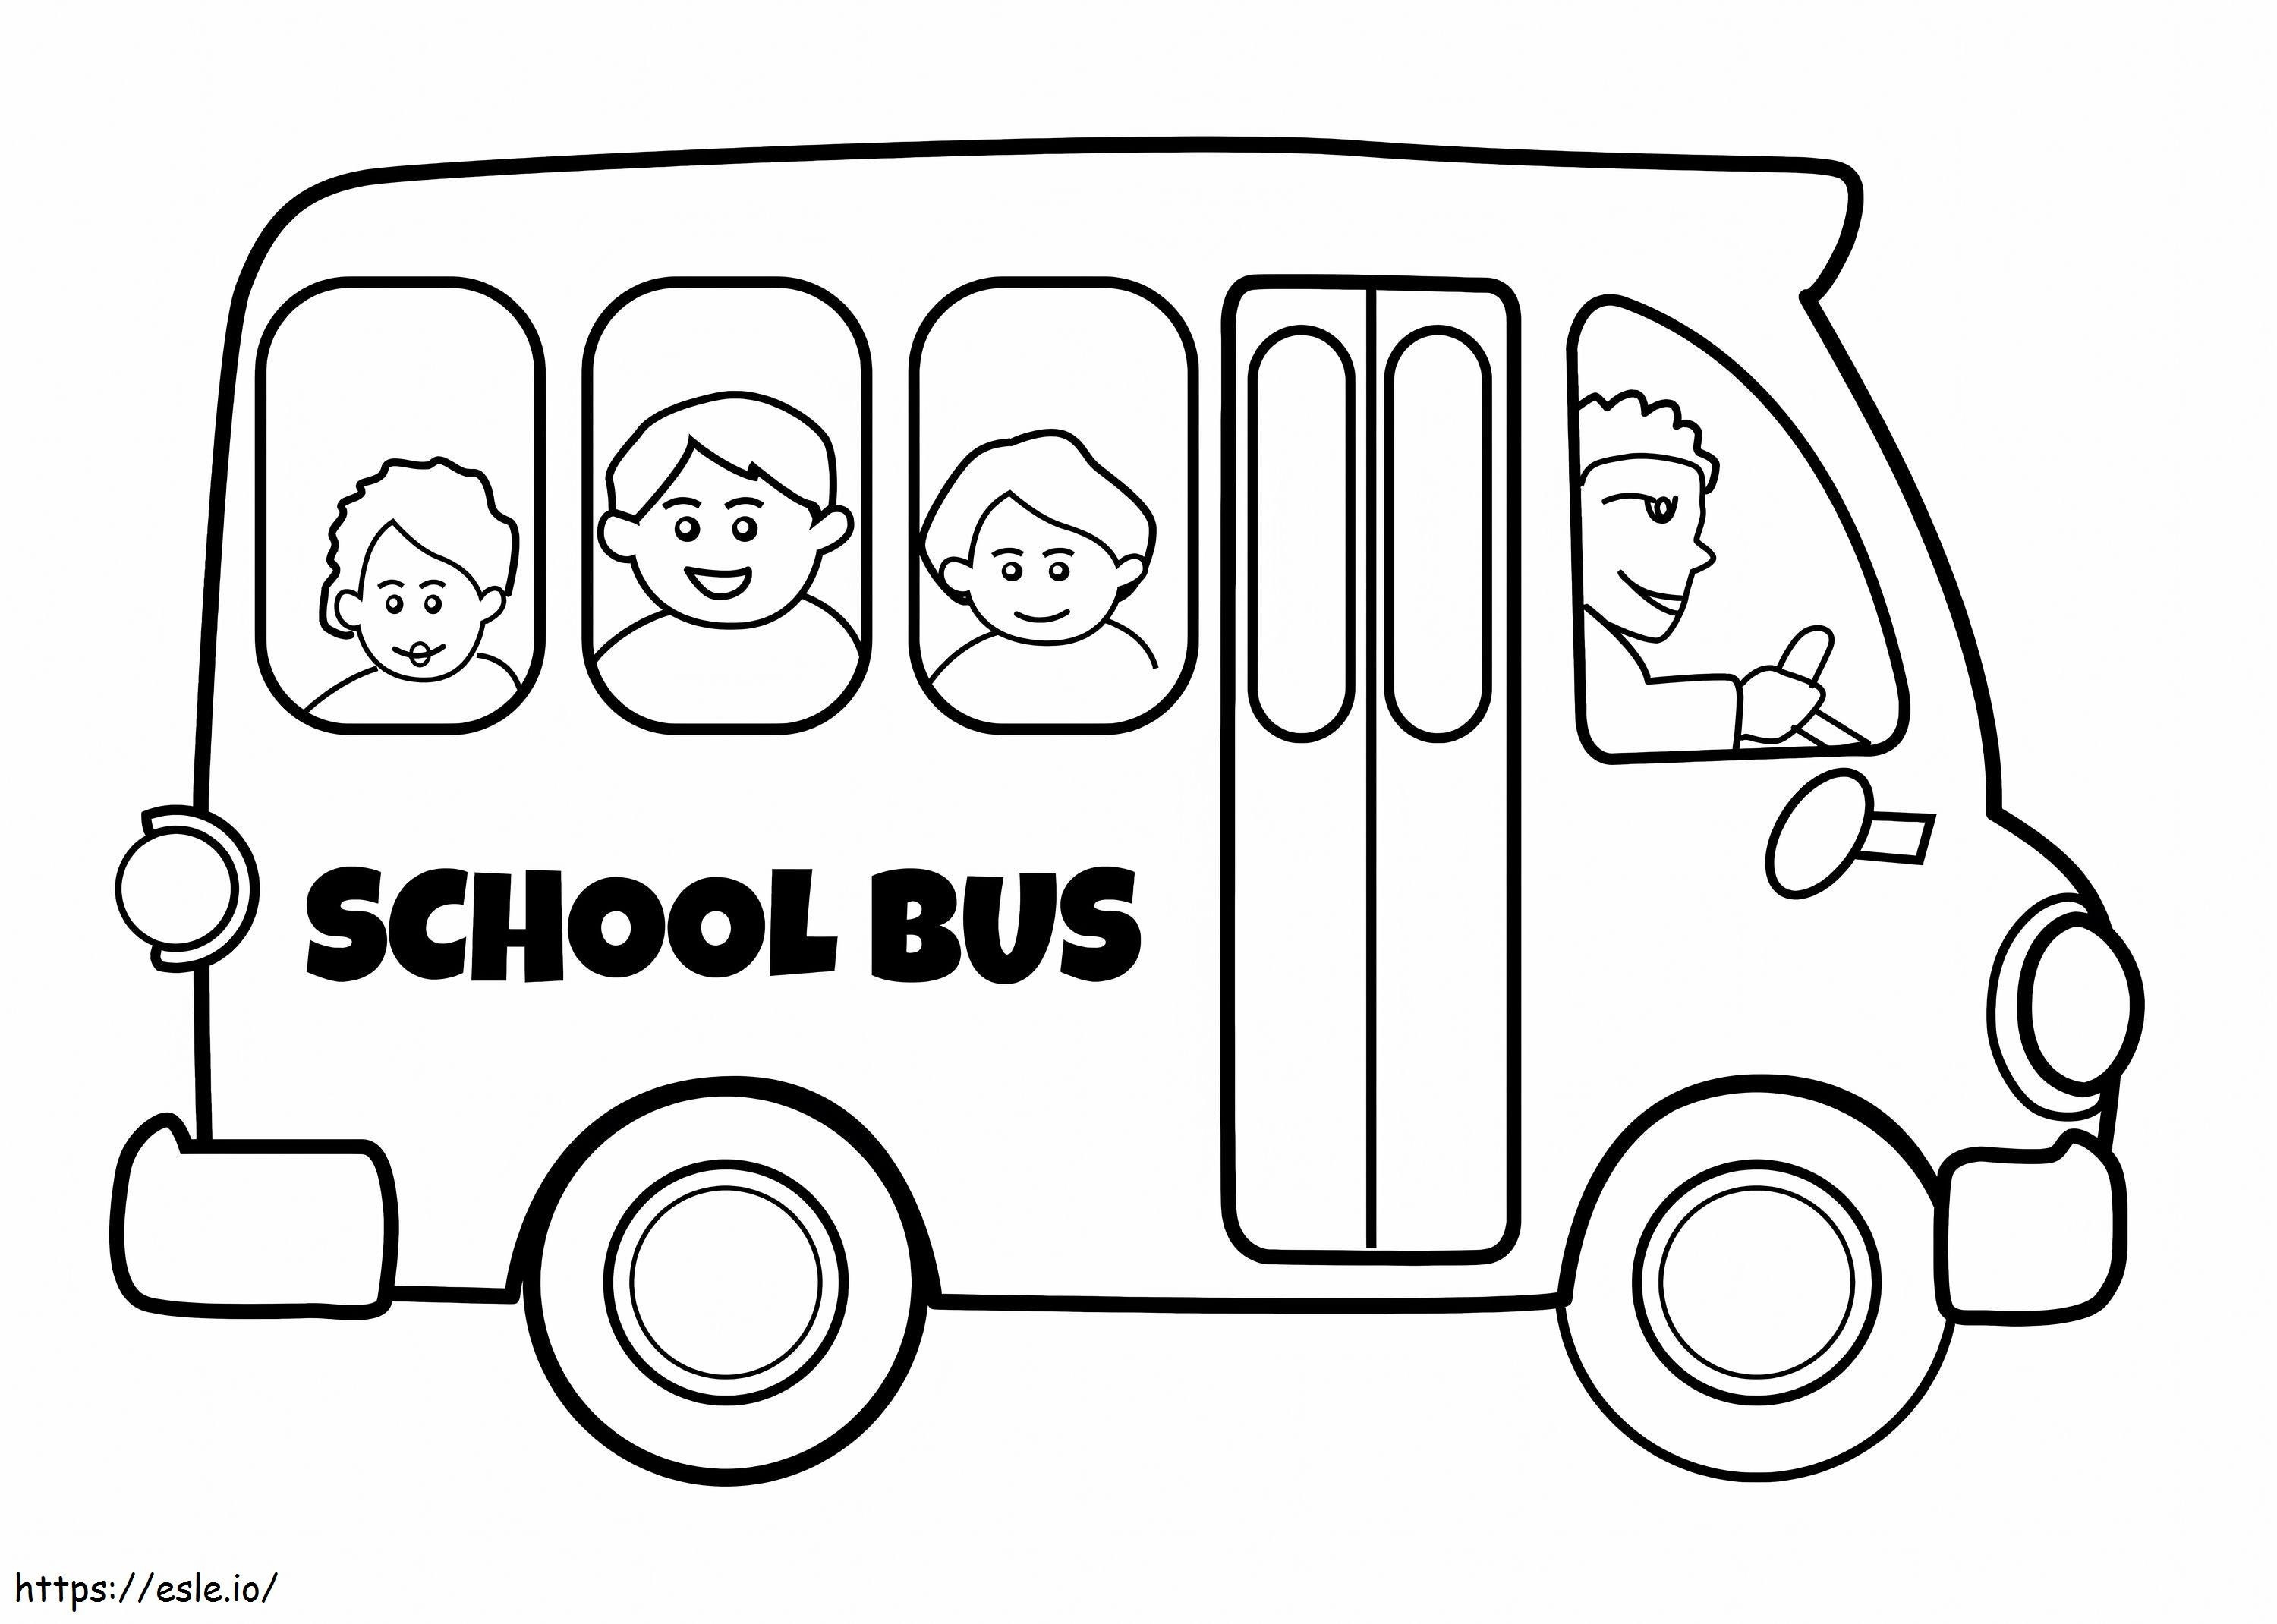 Simple School Bus coloring page